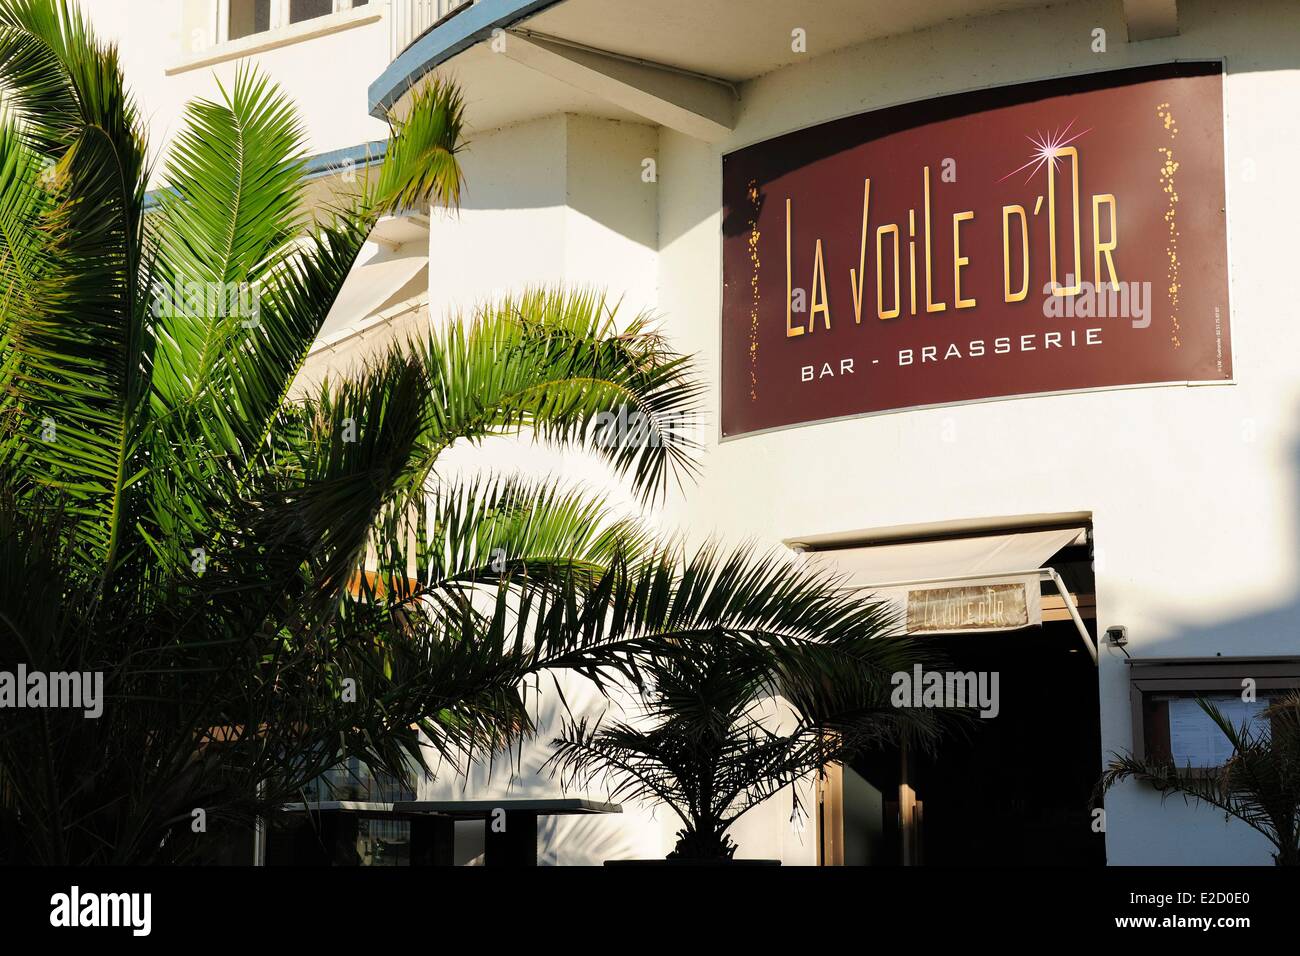 France Loire Atlantique Le Pouliguen the restaurant La Voile d'Or Stock  Photo - Alamy